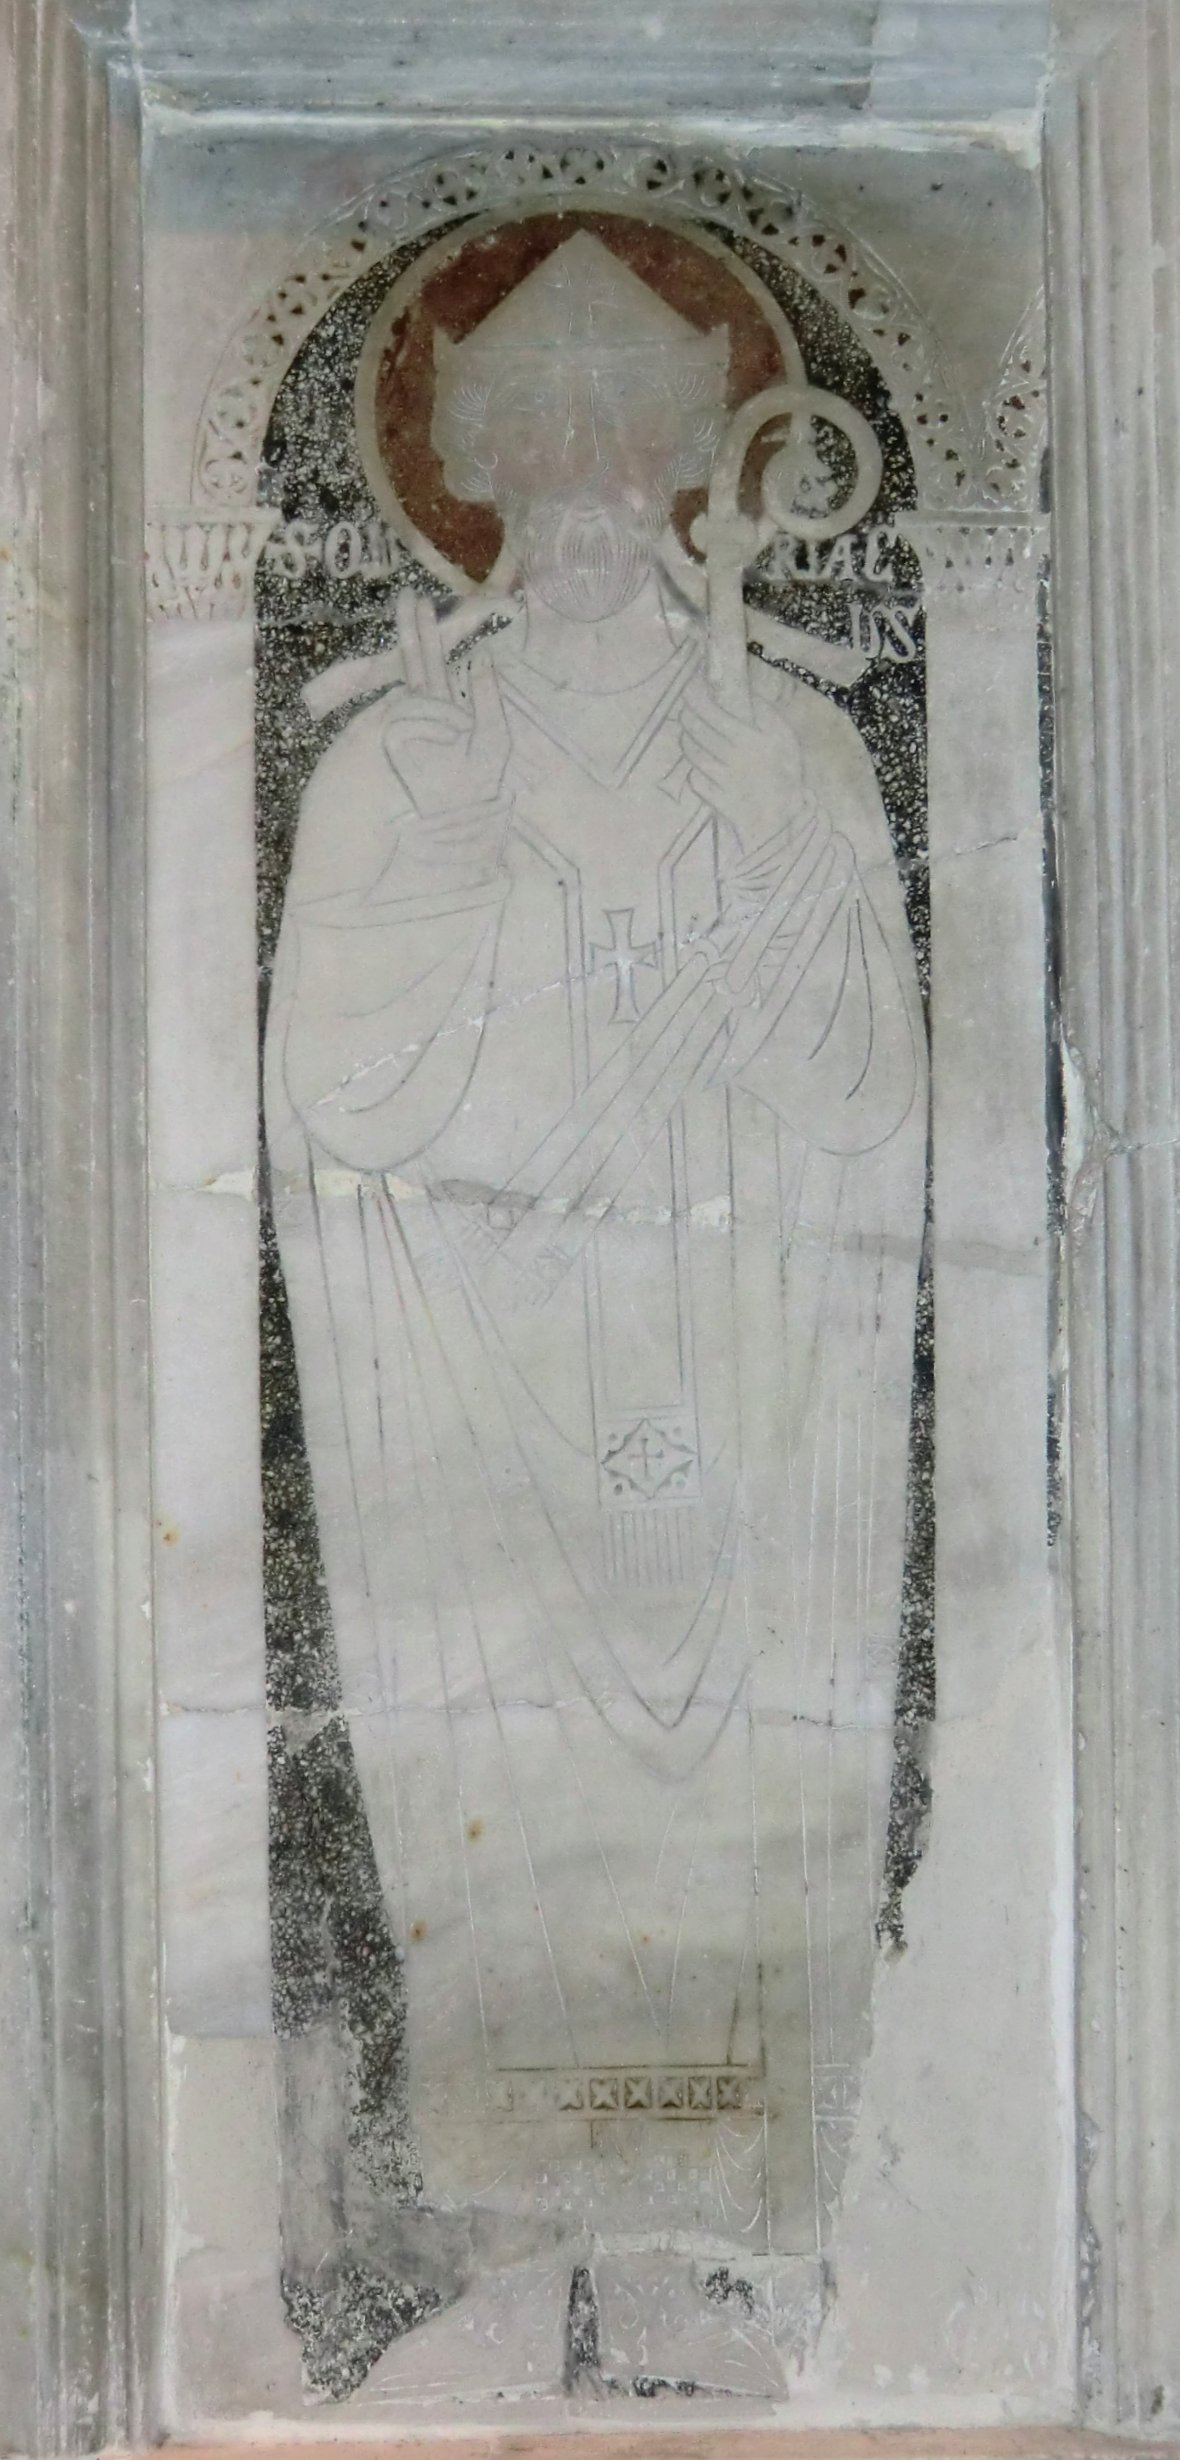 Darstellung auf der Chorbrüstung, 1189, in der Cyriacus geweihten Kirche in Ancona